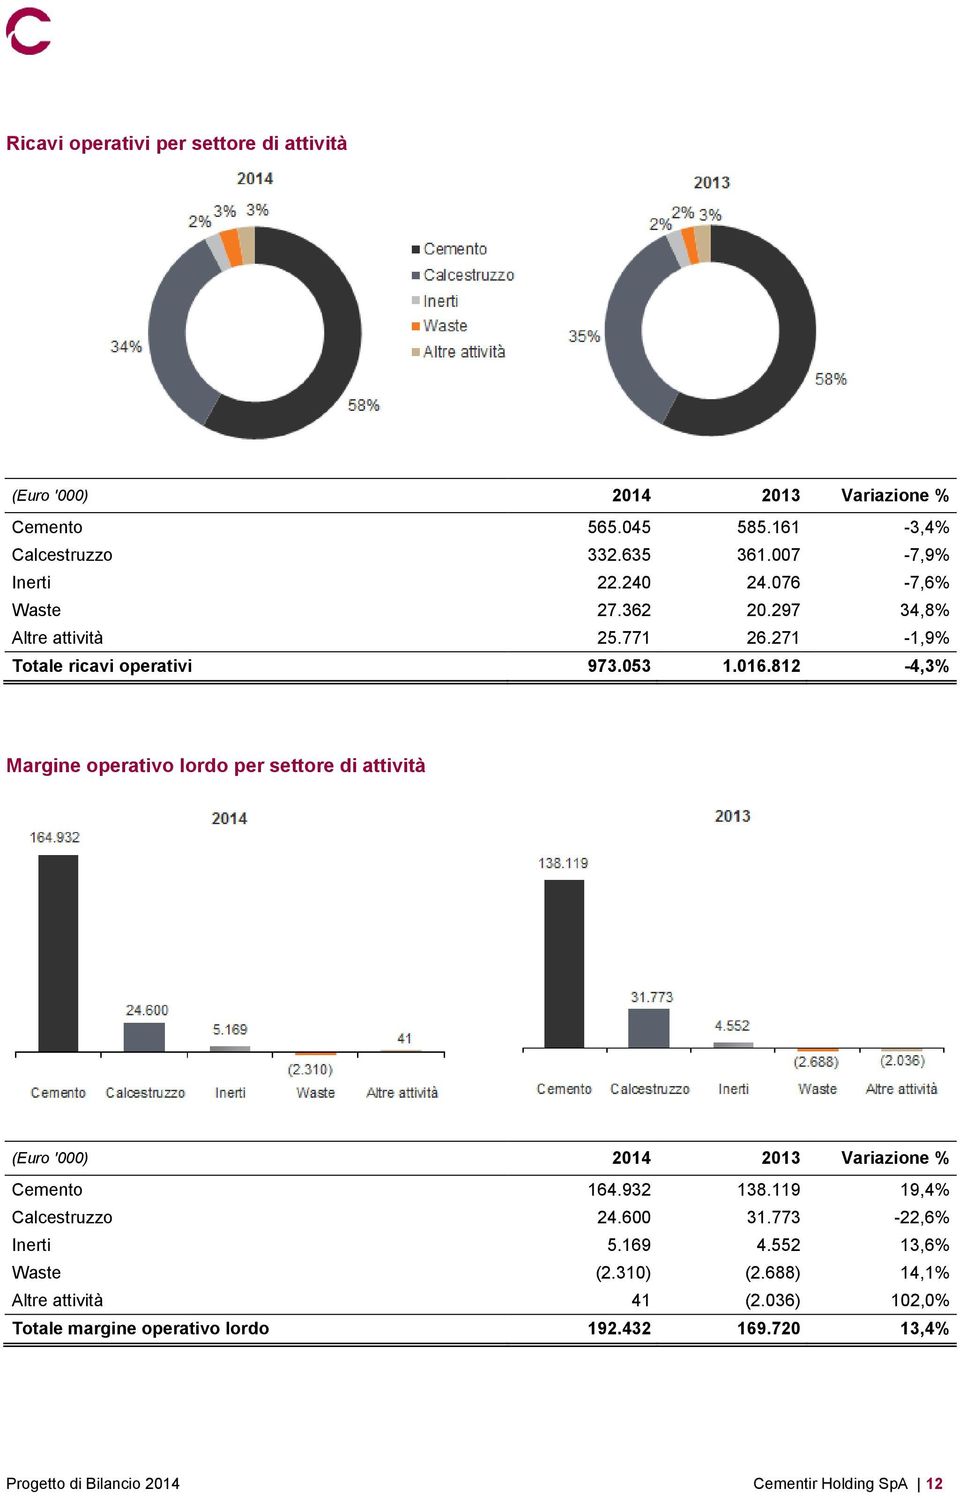 812-4,3% Margine operativo lordo per settore di attività (Euro '000) 2014 2013 Variazione % Cemento 164.932 138.119 19,4% Calcestruzzo 24.600 31.